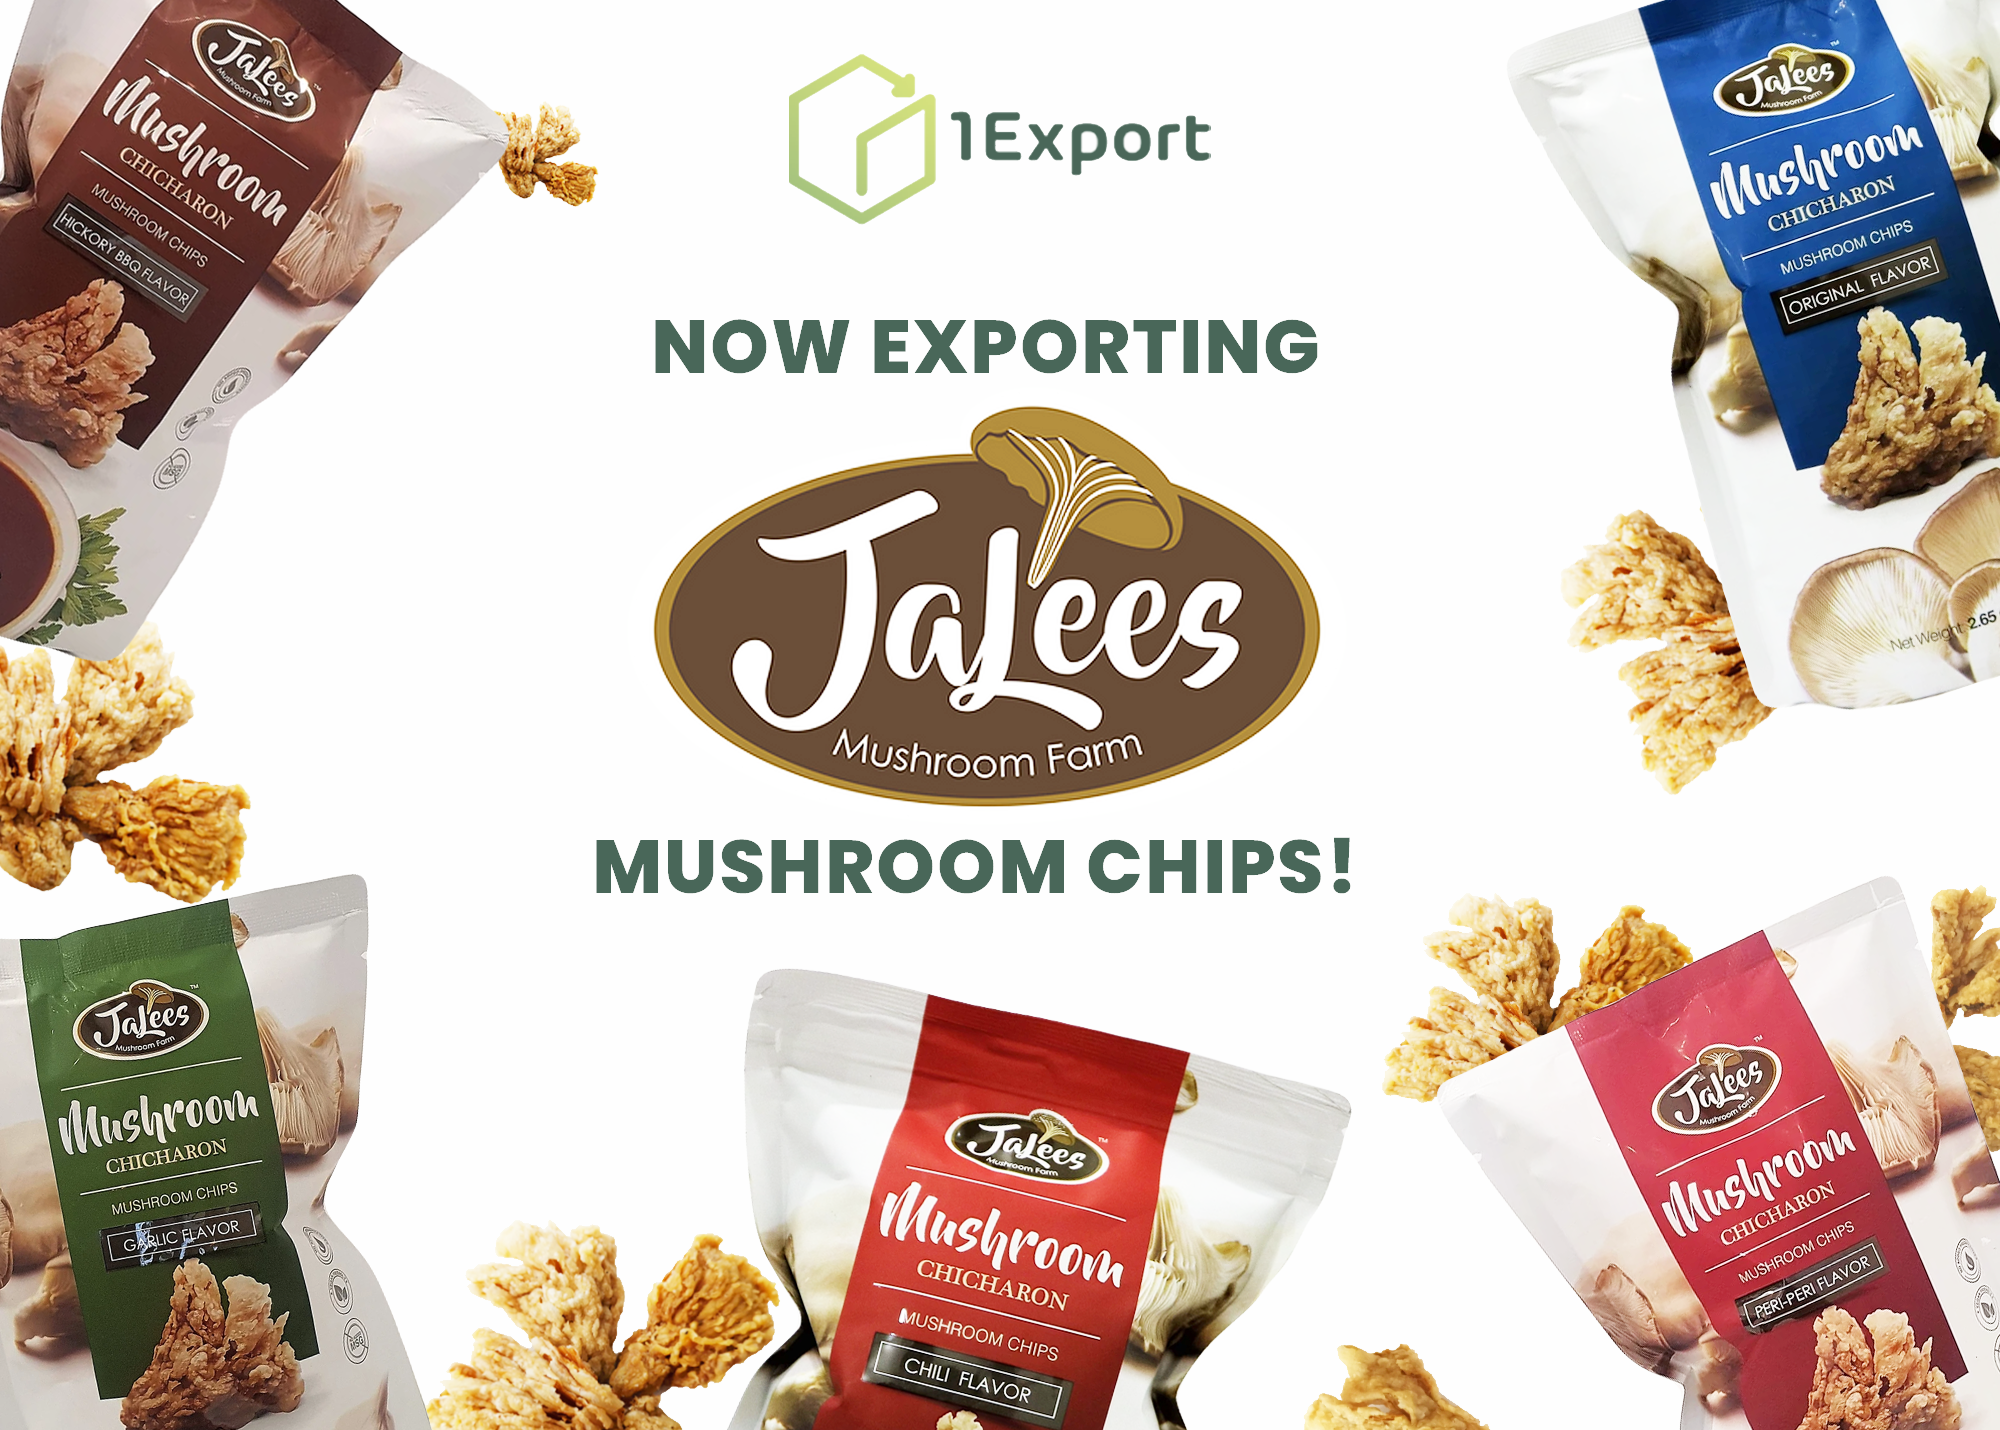 Now Exporting JaLees Mushroom Chips